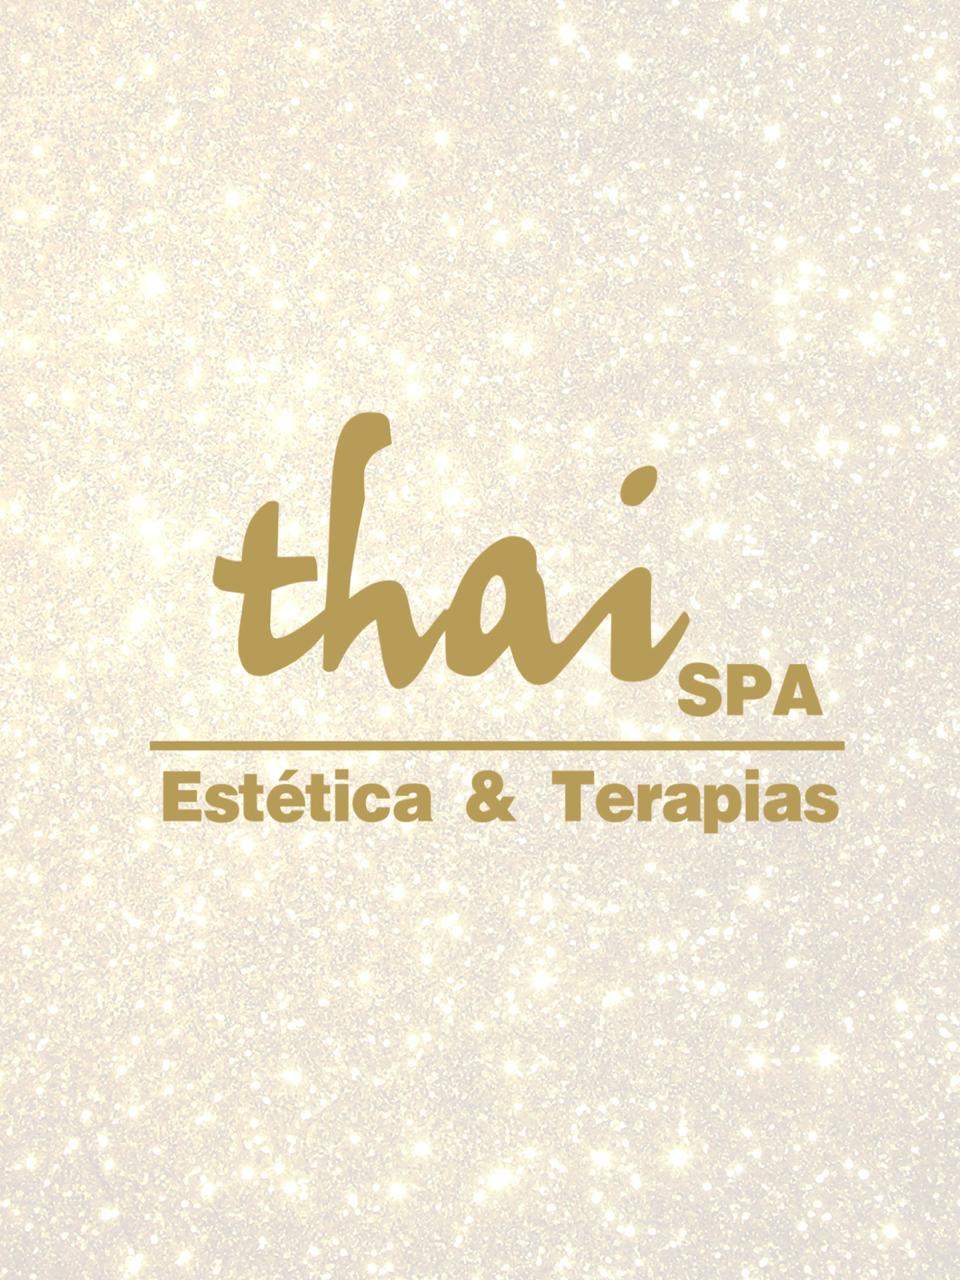 Thai Spa Estética & Terapias